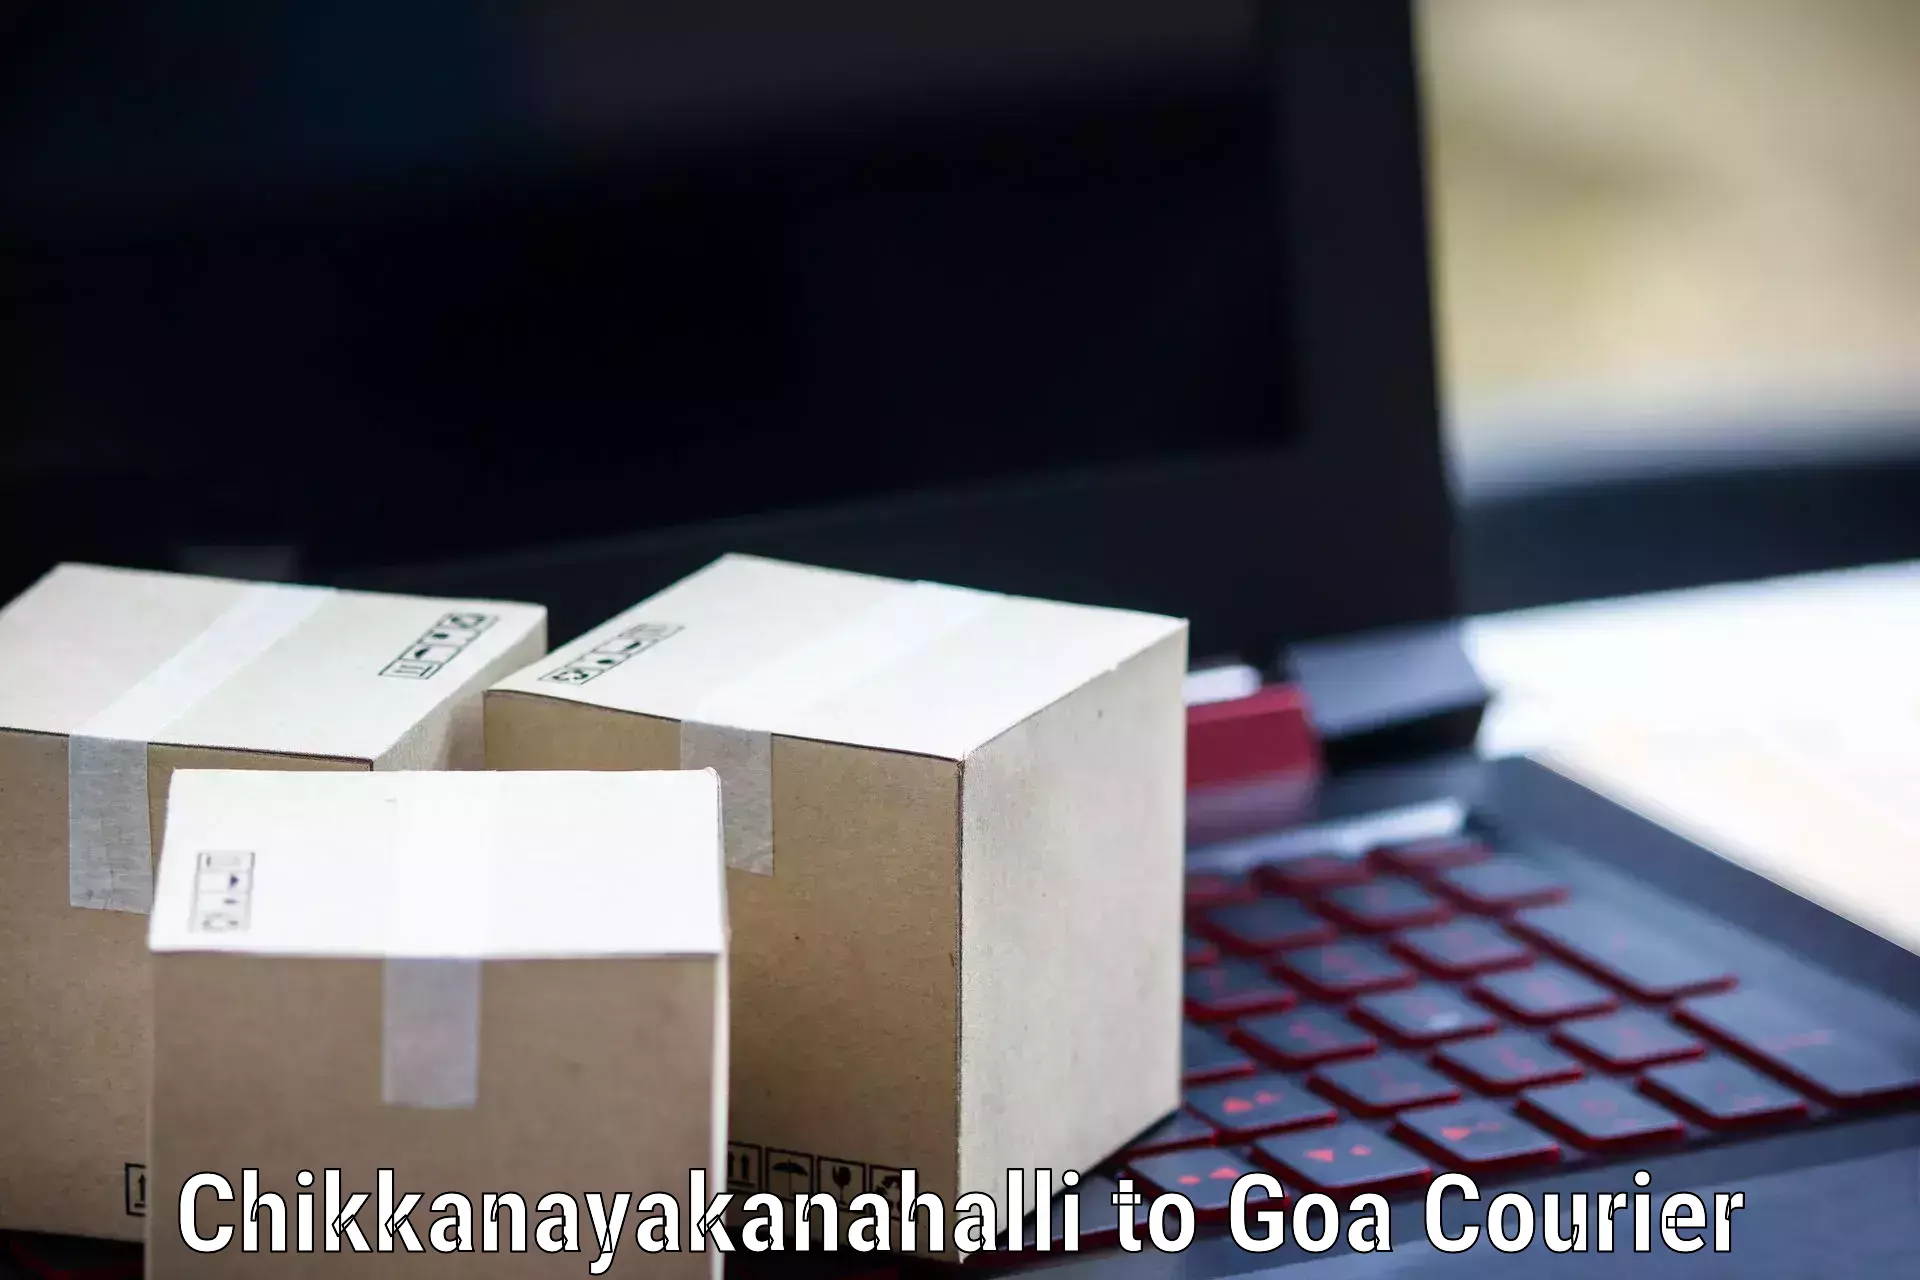 Door-to-door freight service Chikkanayakanahalli to IIT Goa